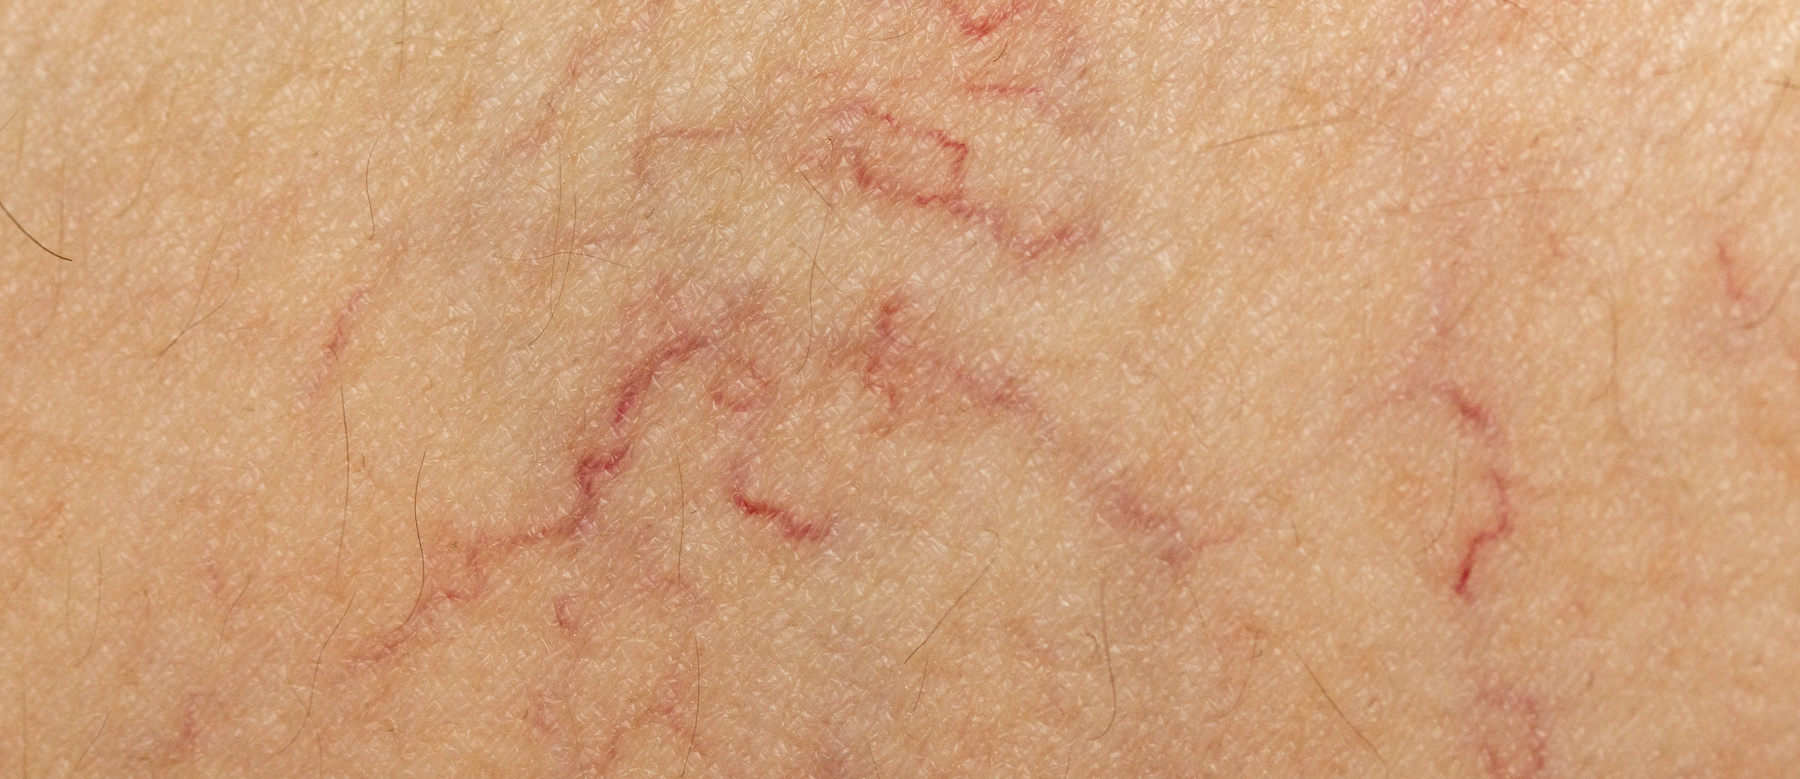 Das Bild zeigt einen Hautausschnitt mit ein paar geplatzten Äderchen, wie es typisch bei der Hauterkrankung Rosazea ist.